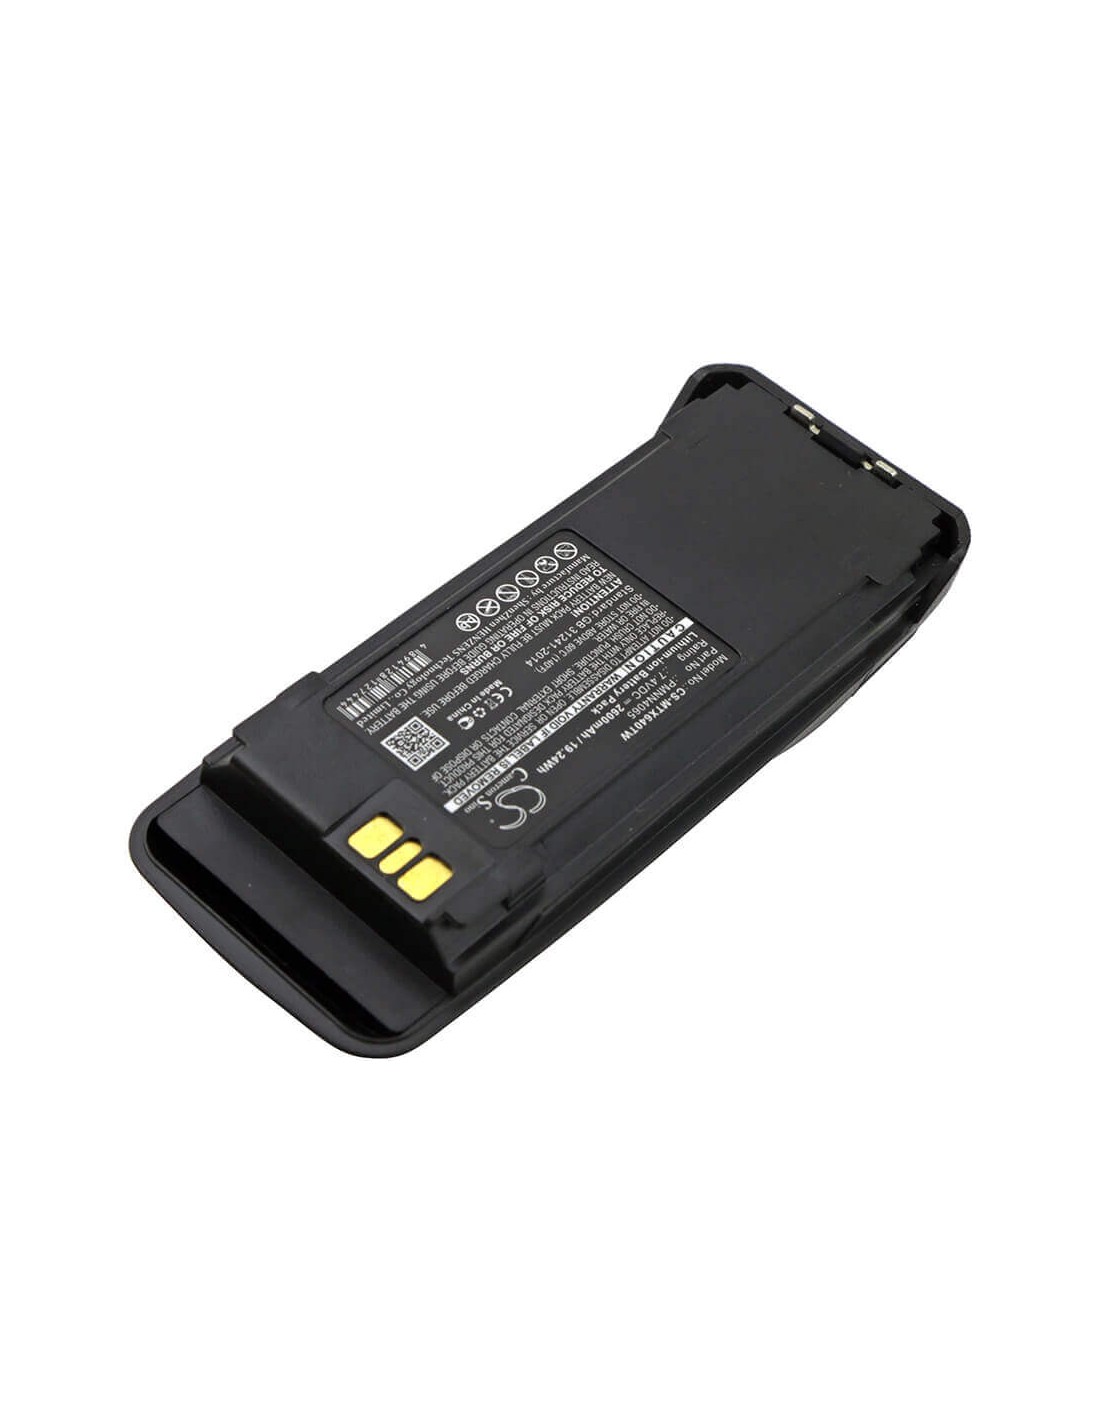 Battery for Motorola Mototrbo Dr3000, Mototrbo Dp3400 7.5V, 2600mAh - 19.50Wh